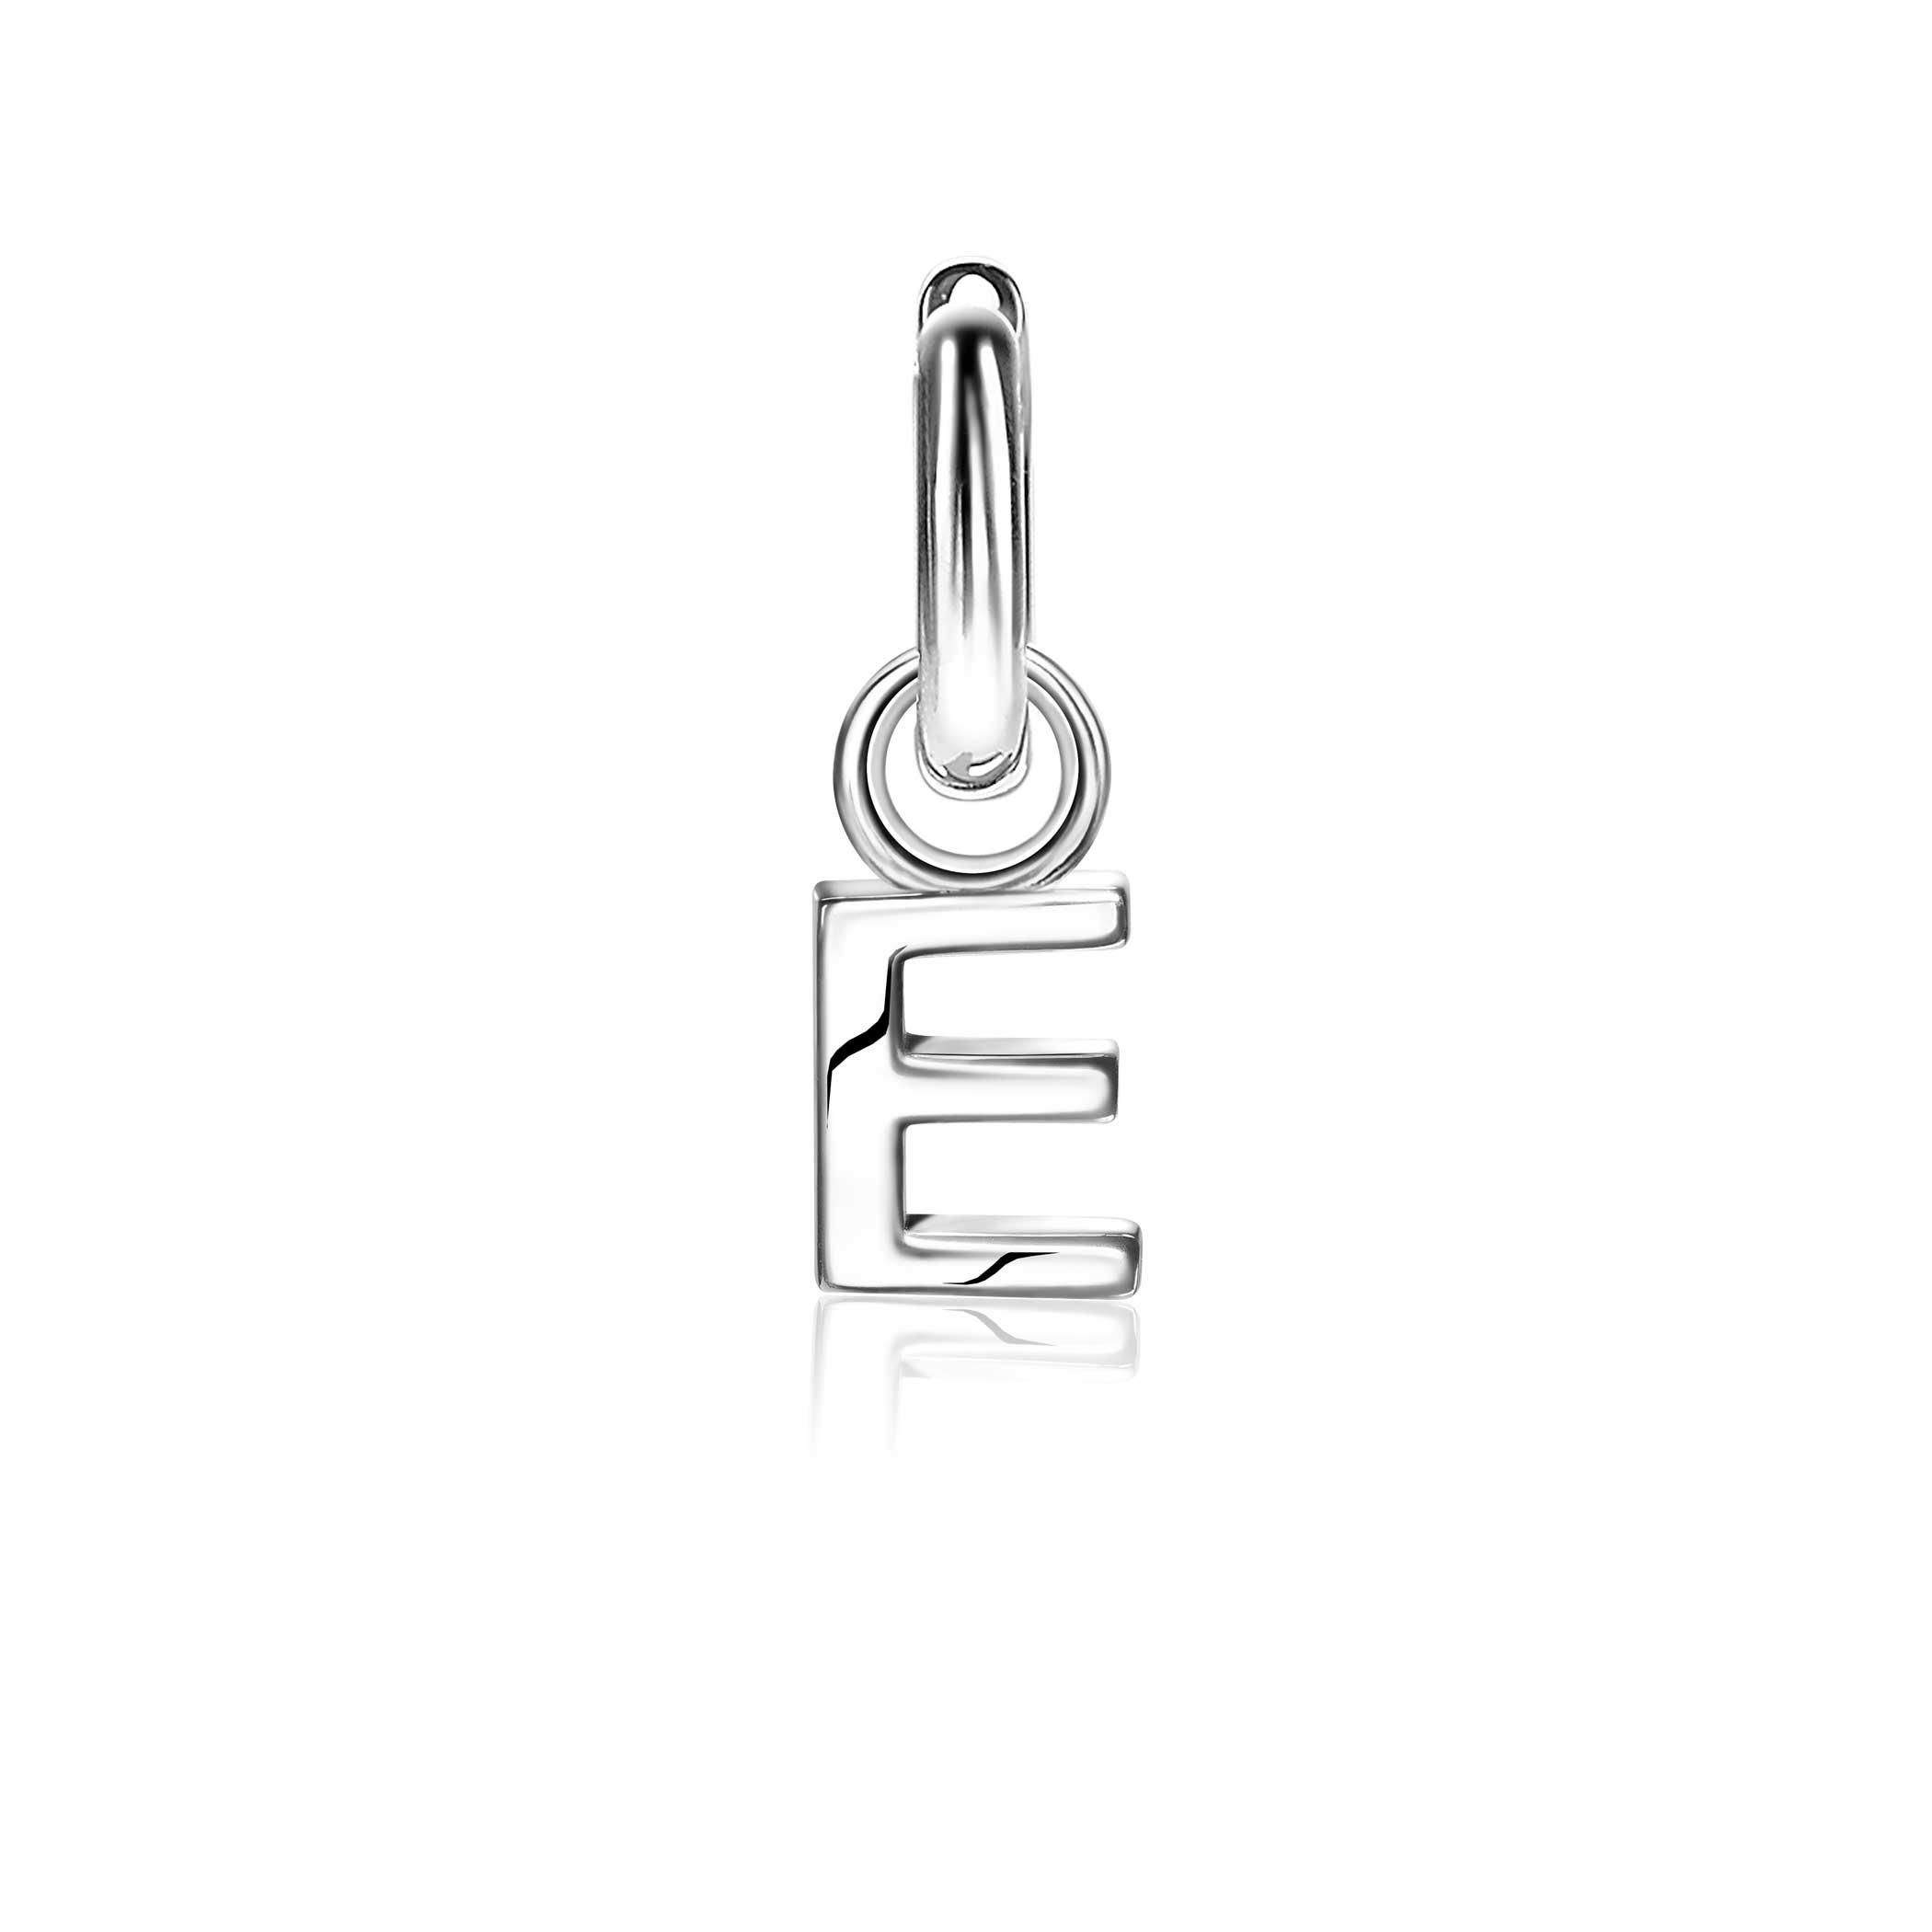 ZINZI Sterling Silver Letter Earrings Pendant E price per piece ZICH2144E (excl. hoop earrings)